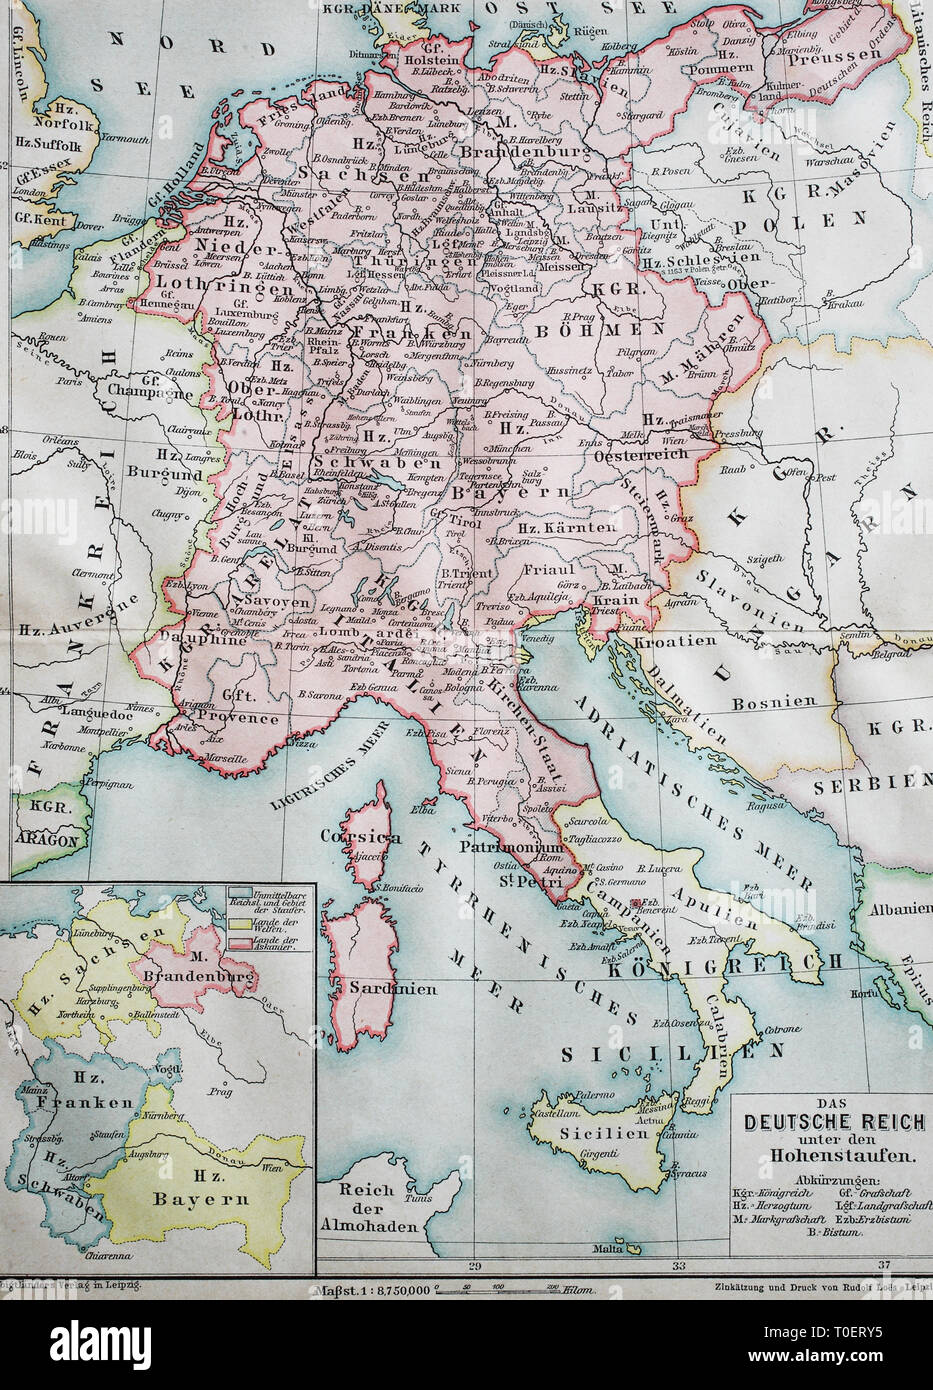 Mapa histórico del imperio alemán en la época de los Hohenstaufen, ca 1200 / Historische Landkarte, das Deutsche Reich Unter den Hohenstaufen, ca 1200 Foto de stock